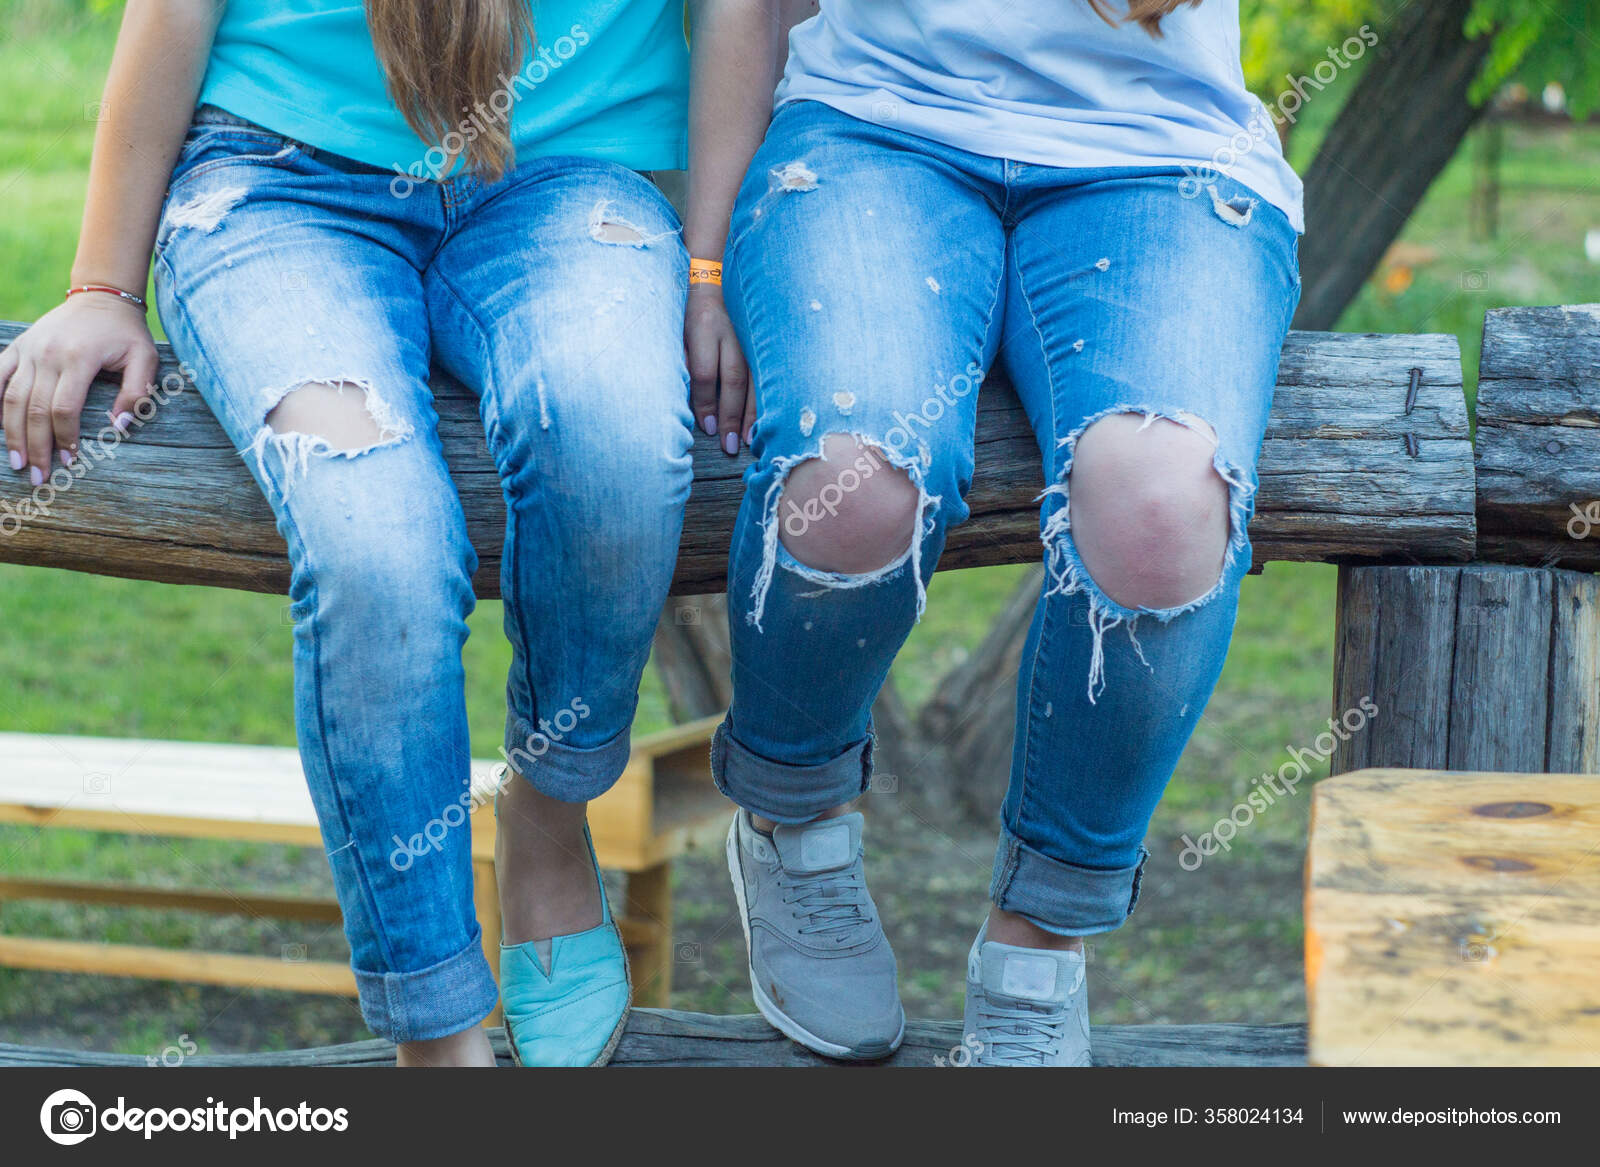 Stockfoto's van Jeans met rechtenvrije afbeeldingen van Jeans gaten | Depositphotos